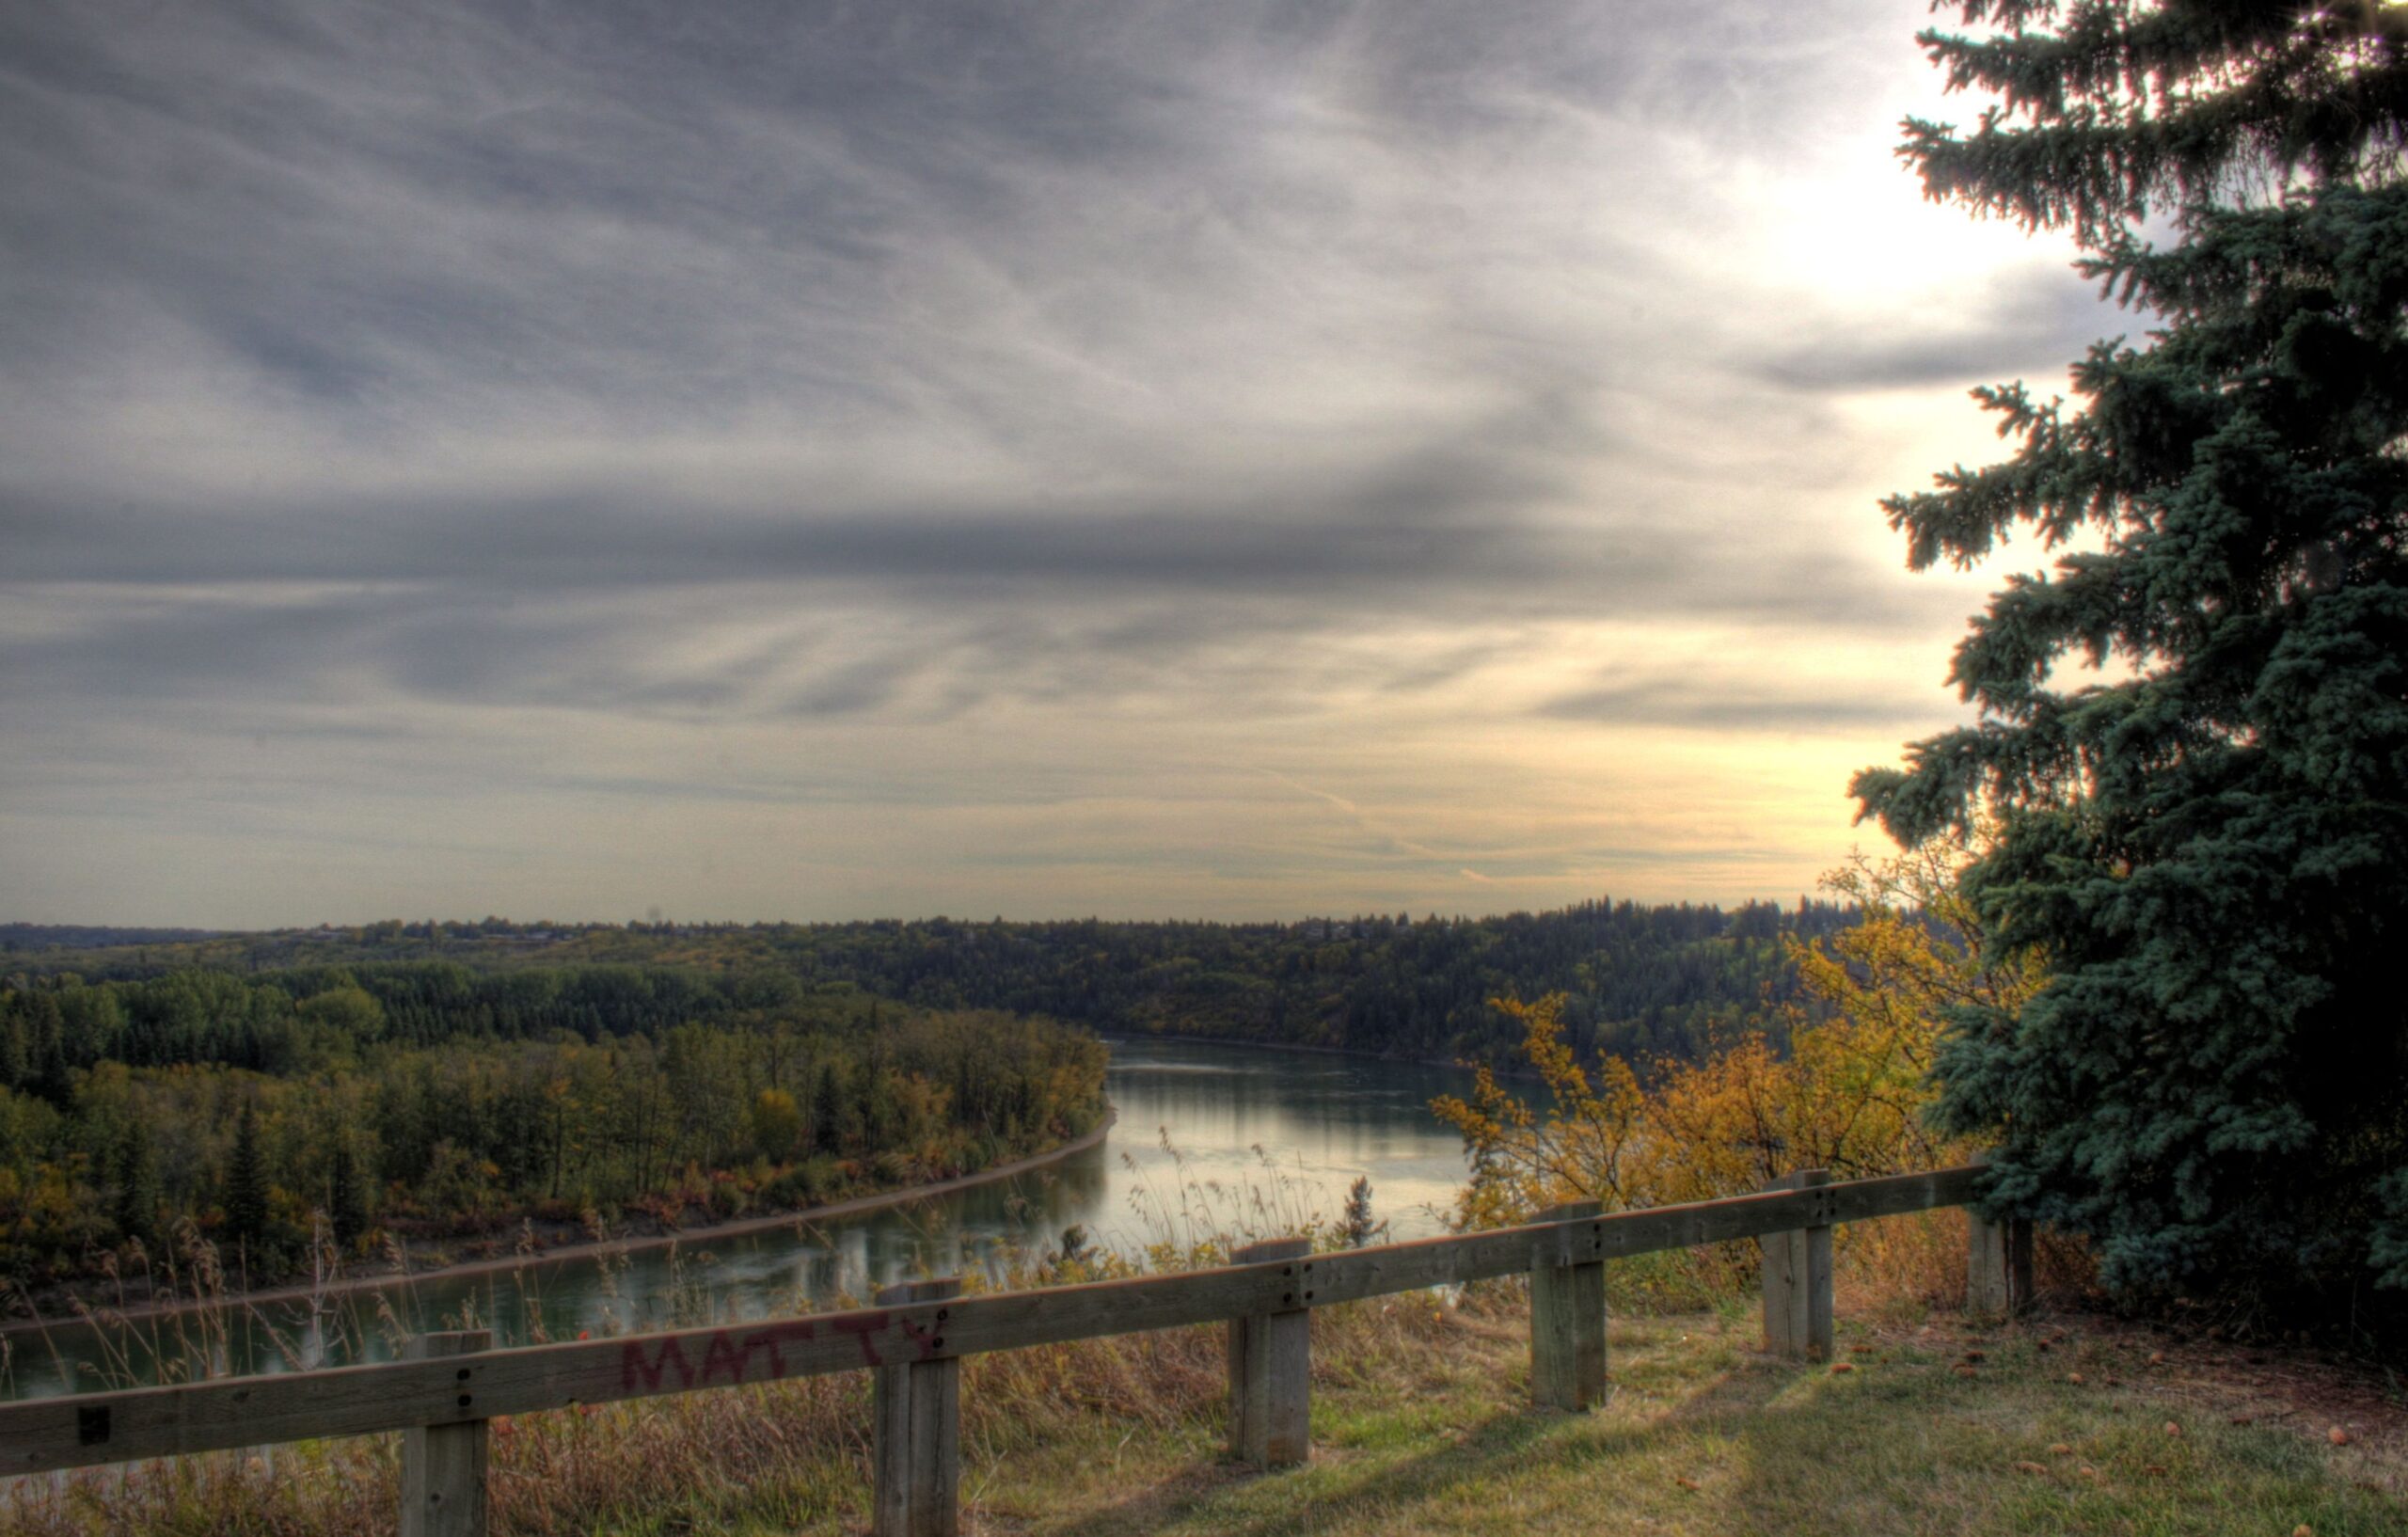 Photo overlooking North Saskatchewan River Valley